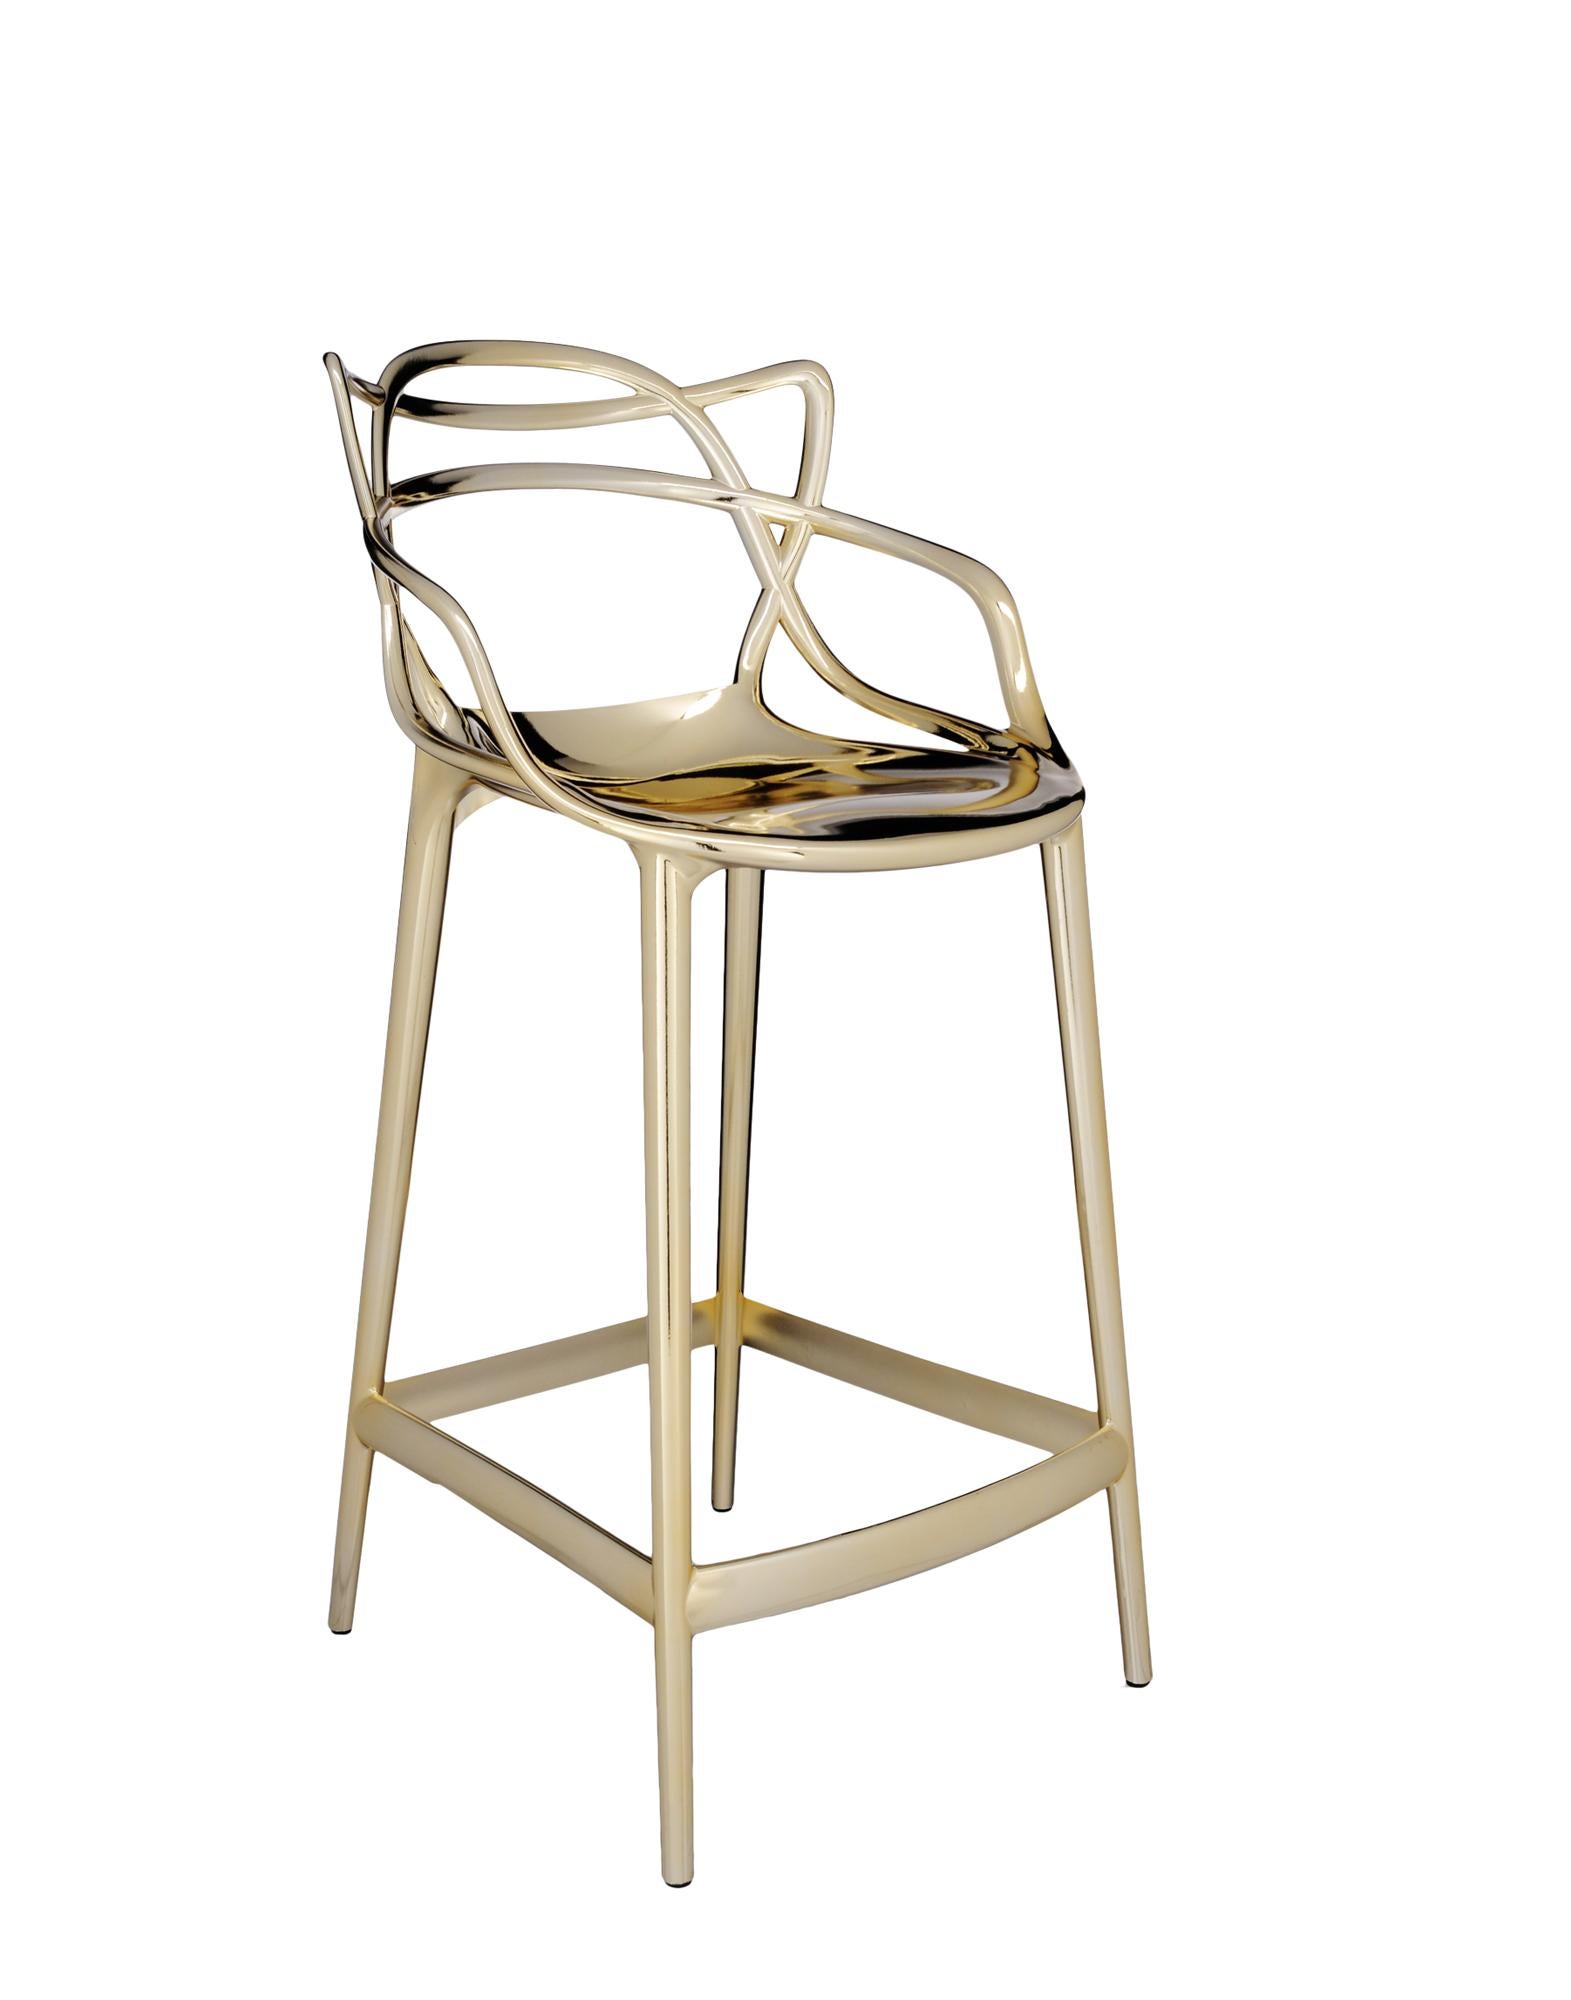 Kartell bietet auch eine Hocker-Version des Masters Stuhls an, der mit dem Good Design Award 2010 und dem Red Dot Award 2013 ausgezeichnet wurde und ein weltweiter Bestseller ist. Die Beine wurden verlängert und die Sitzfläche verkleinert, aber der